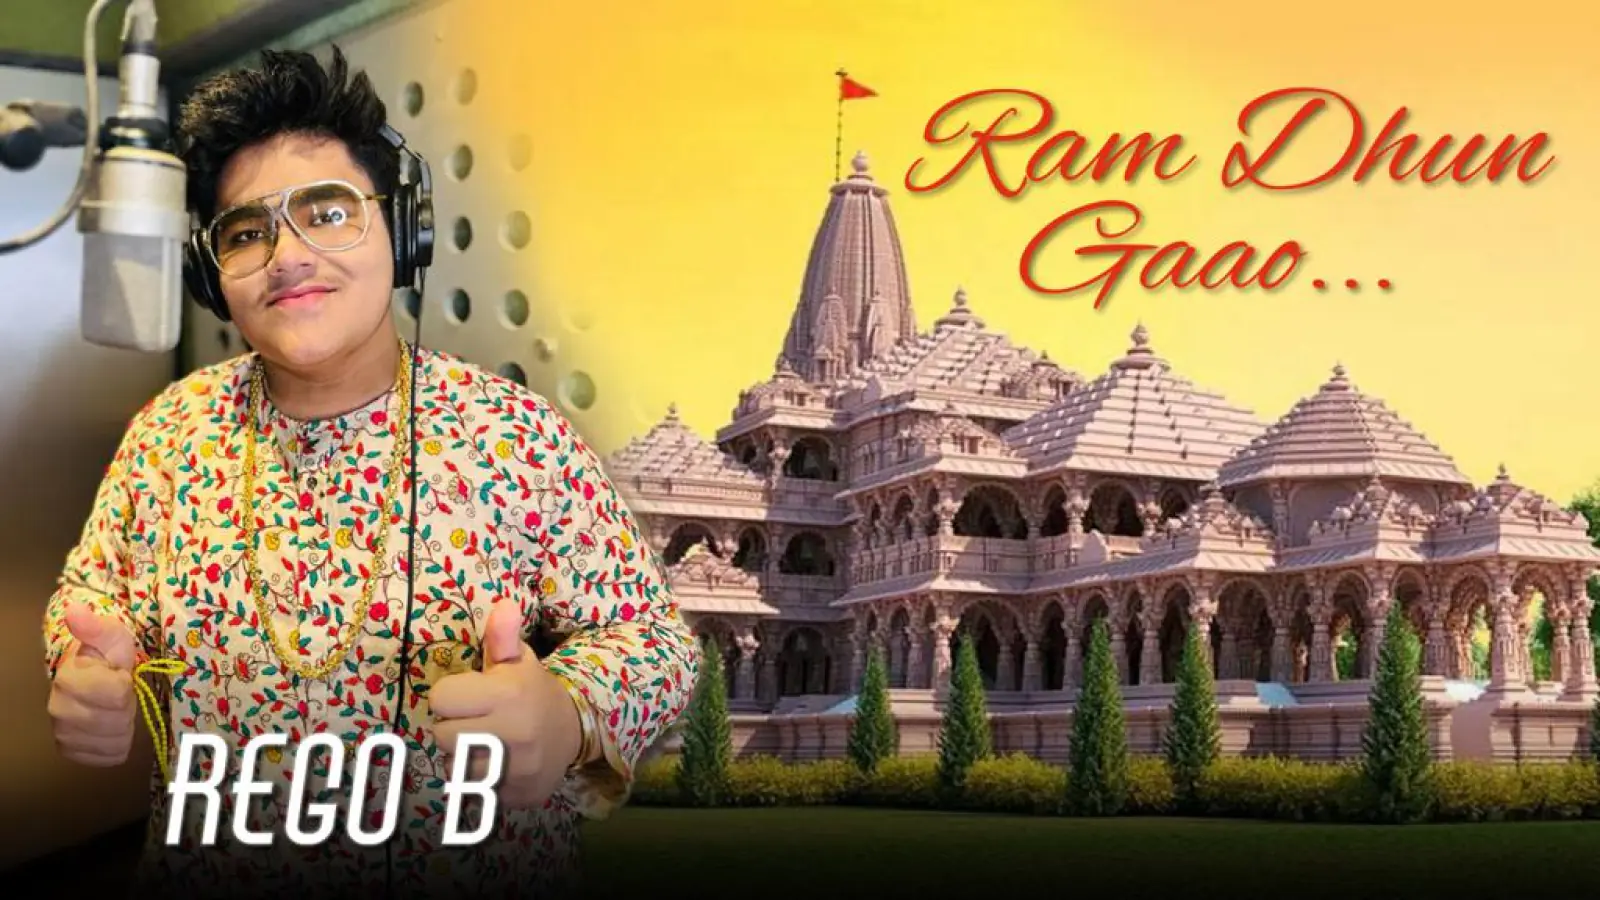 चौदह वर्षीय सेंसेशन रेगो बी ने अनोखा श्रद्धांजलि गीत 'राम धुन गाओ' जारी किया